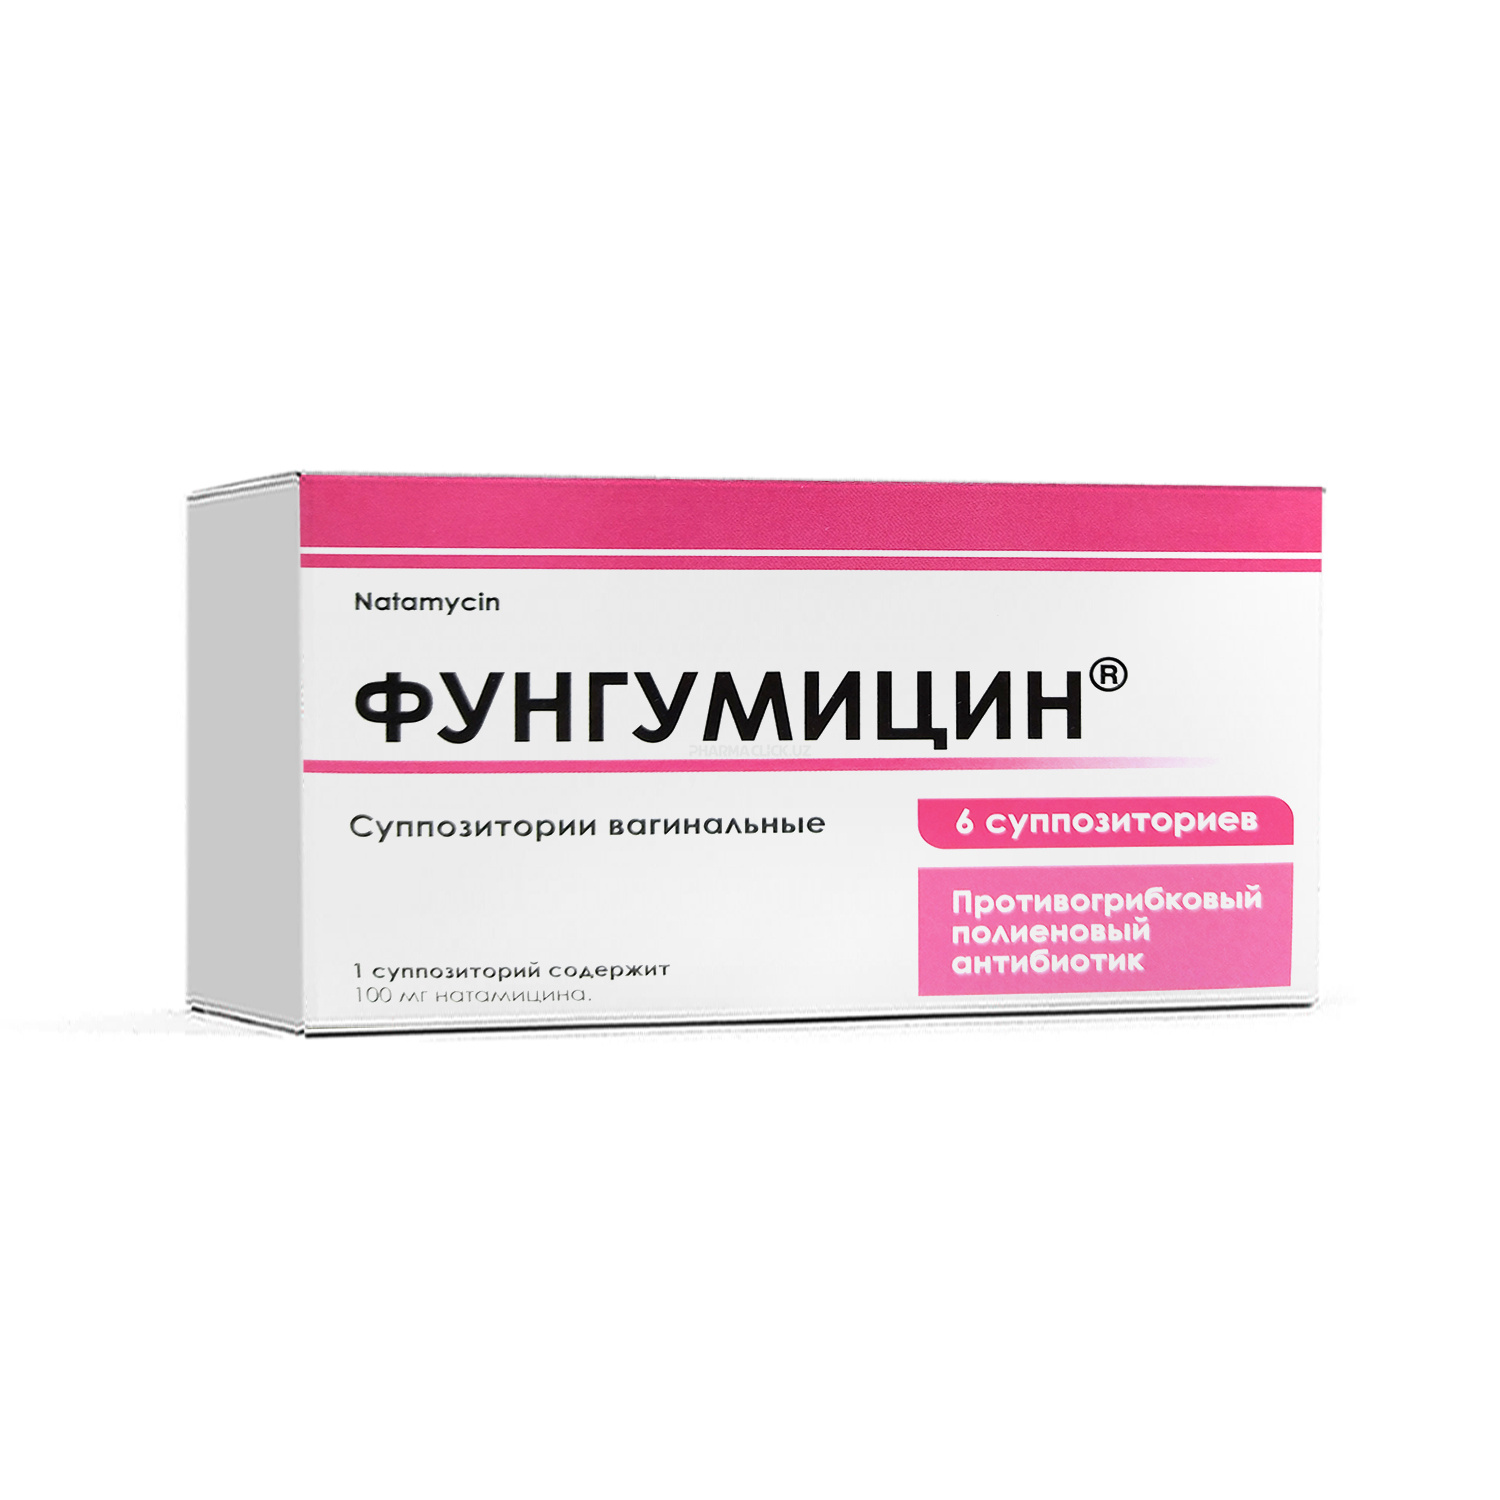 Фунгумицин®  суппозитории вагинальные 100 мг №6